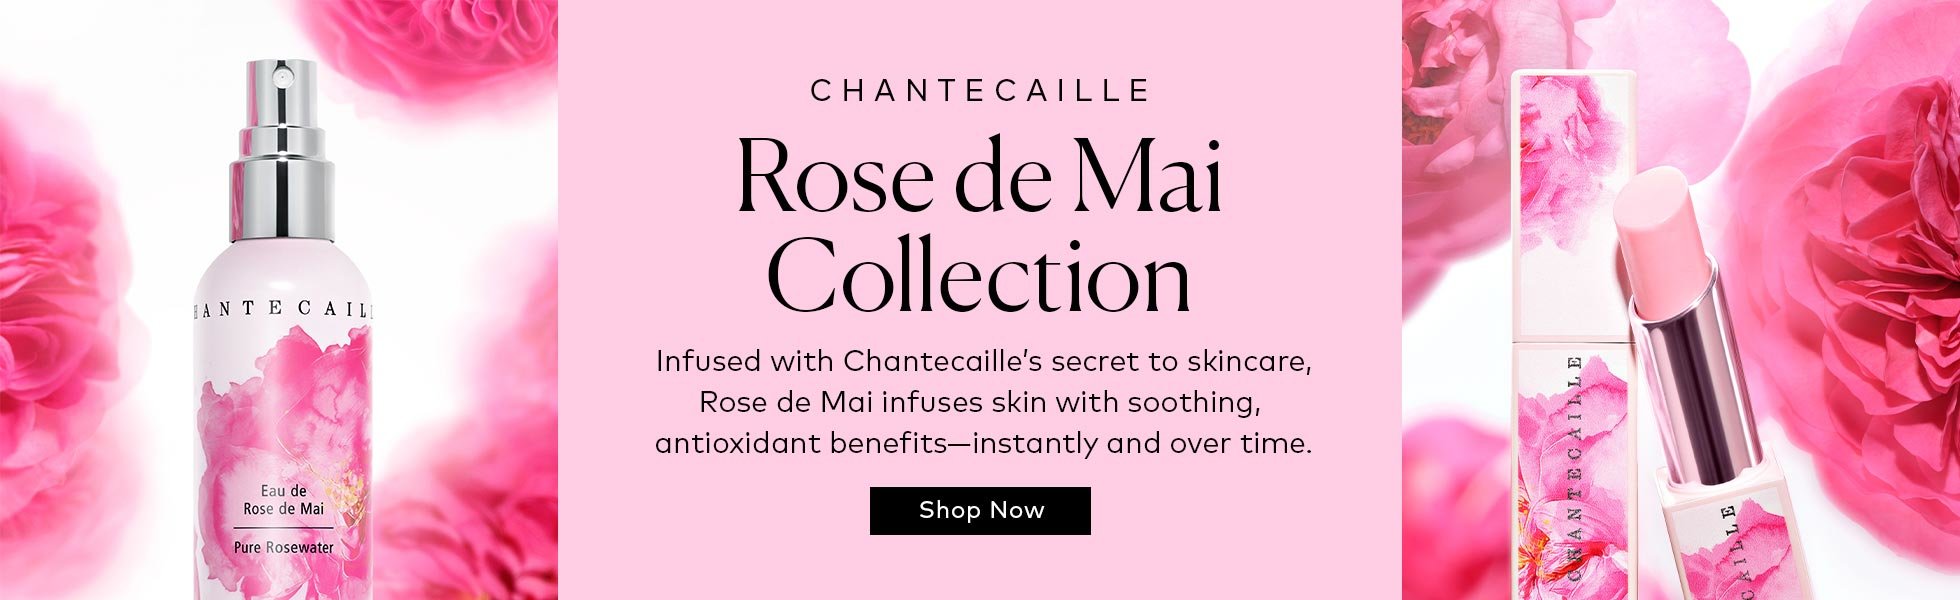 Chantecaille Rose de Mai Collection